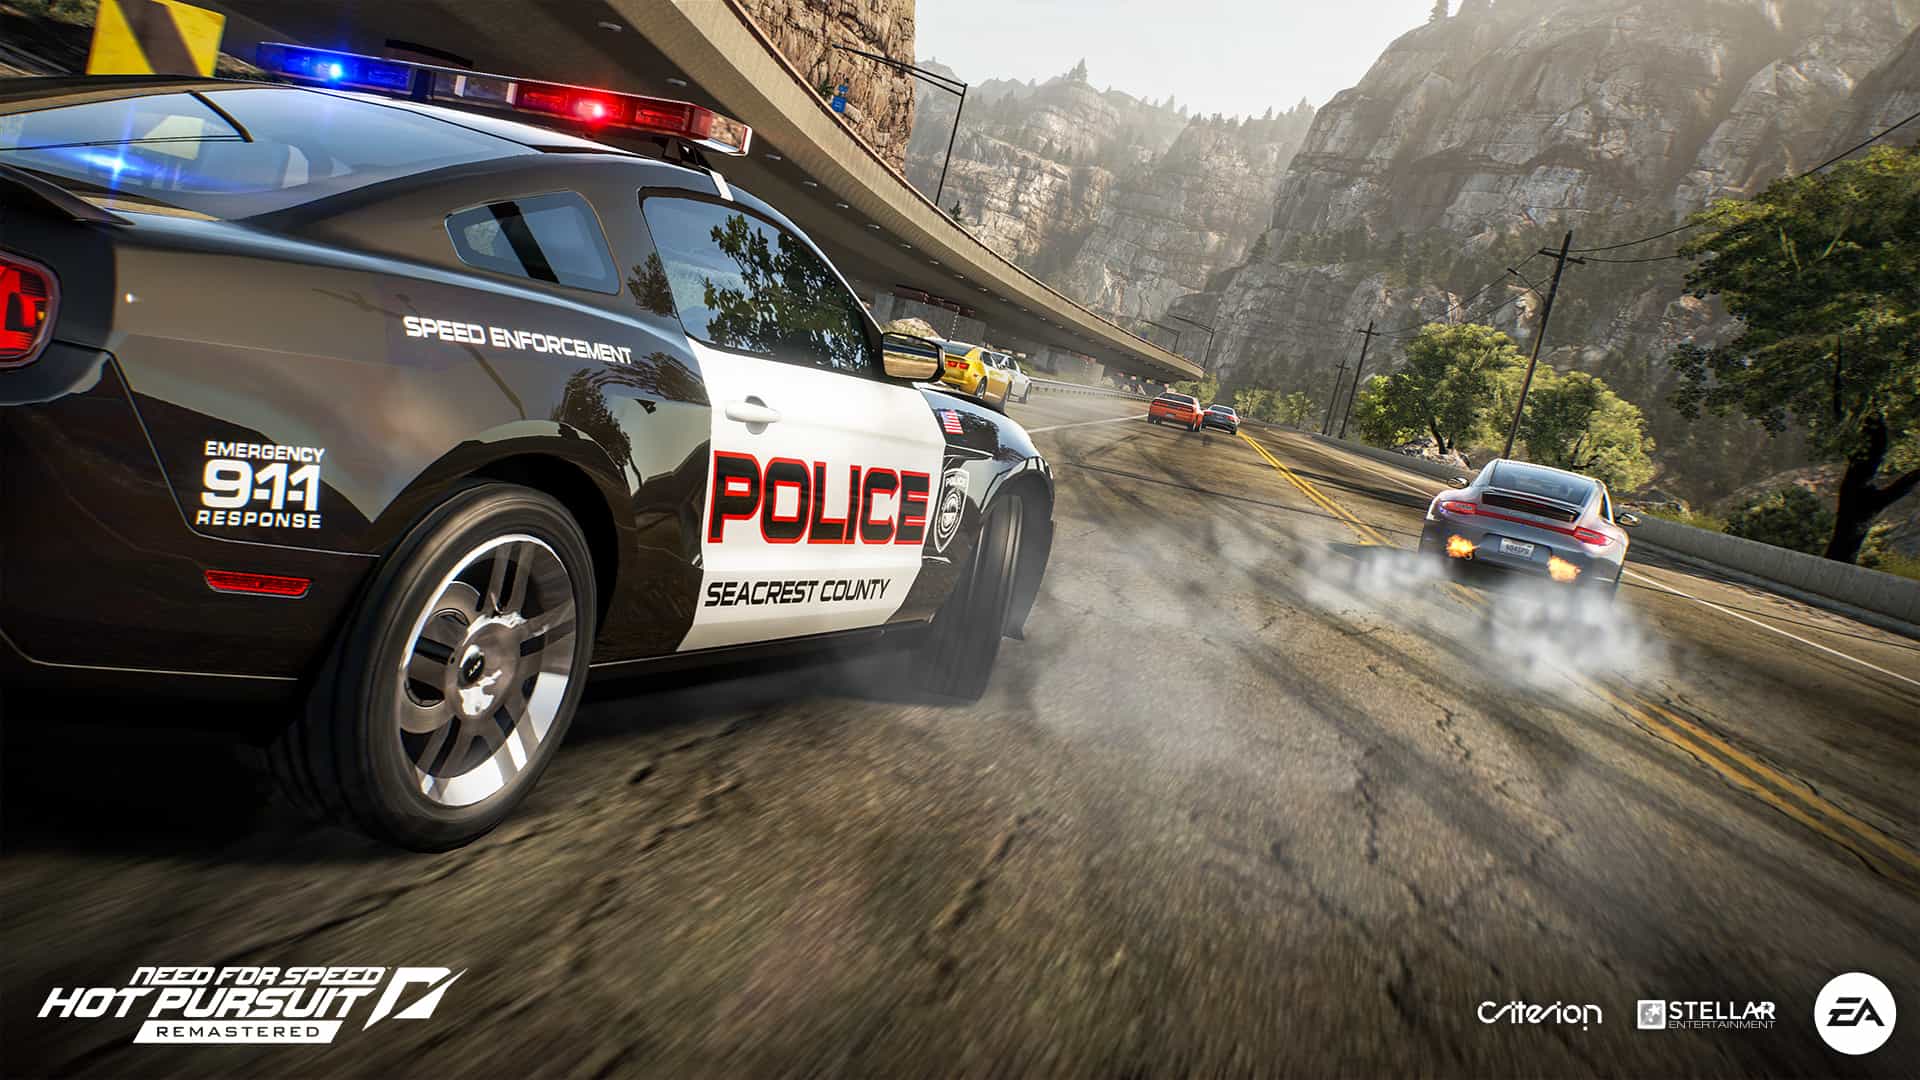 Próximamente se anunciará el nuevo juego Need for Speed